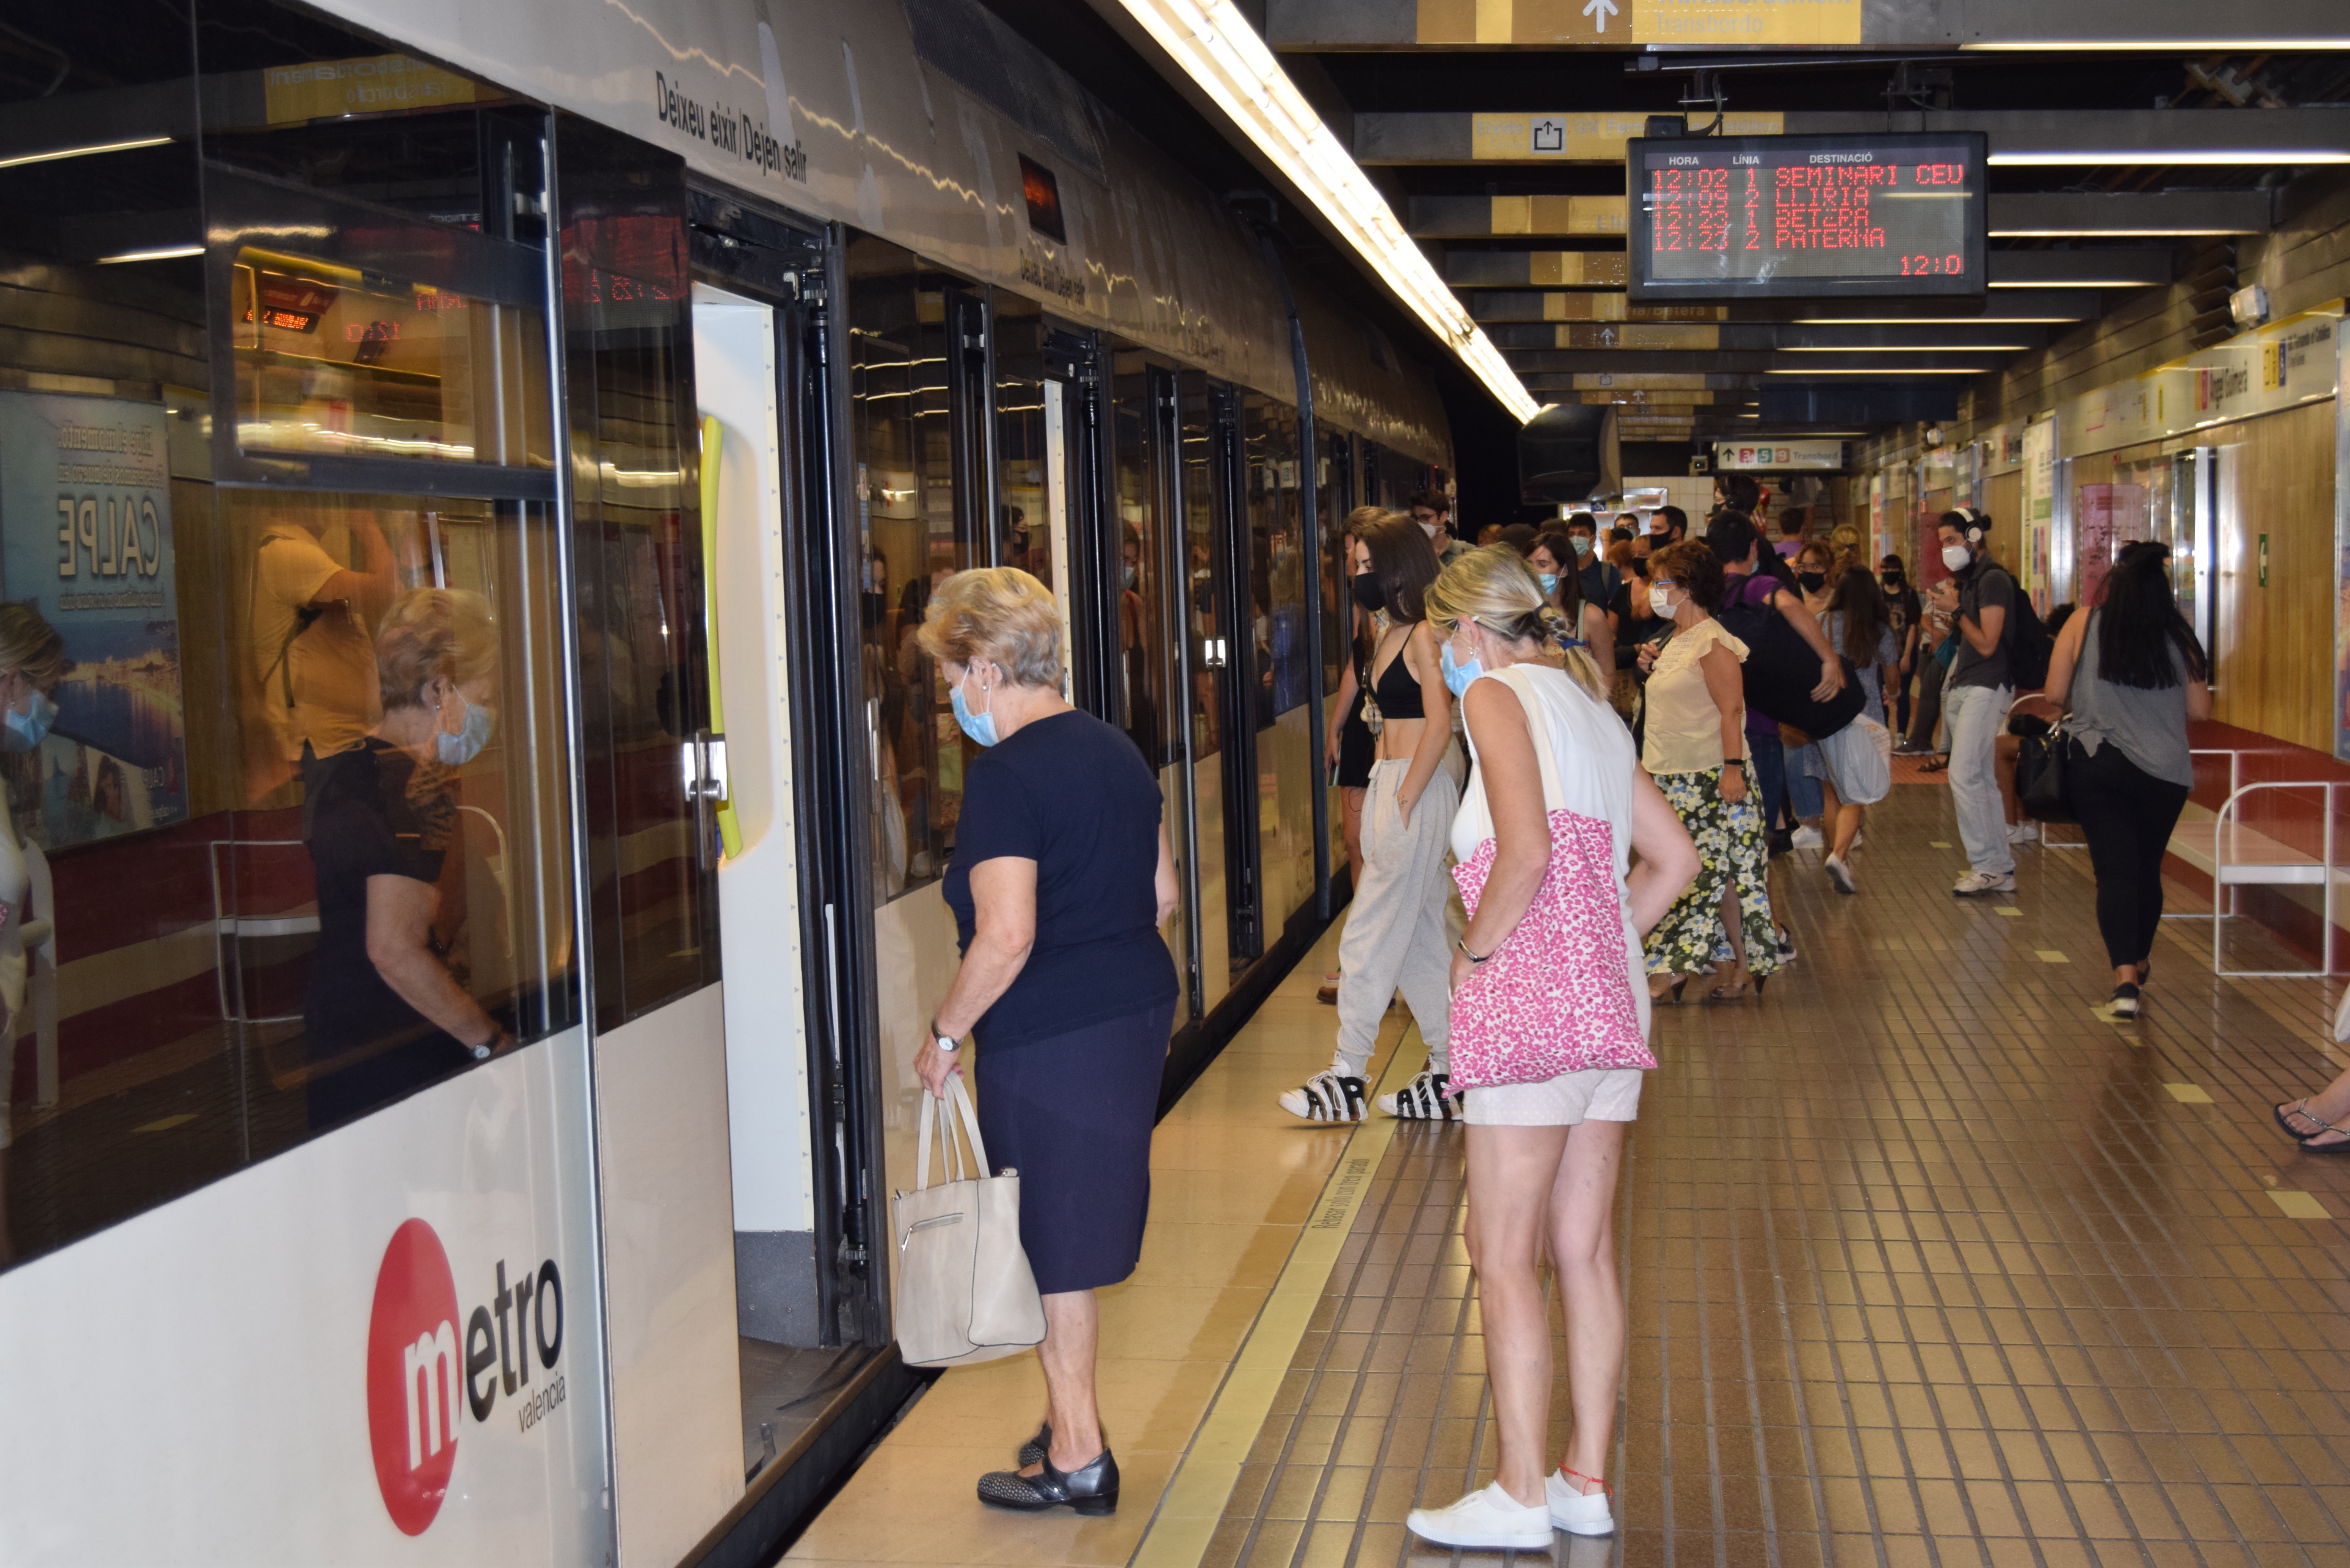 La Generalitat va facilitar la mobilitat de 3,3 milions de viatgers i viatgeres en la xarxa de Metrovalencia el mes de setembre passat